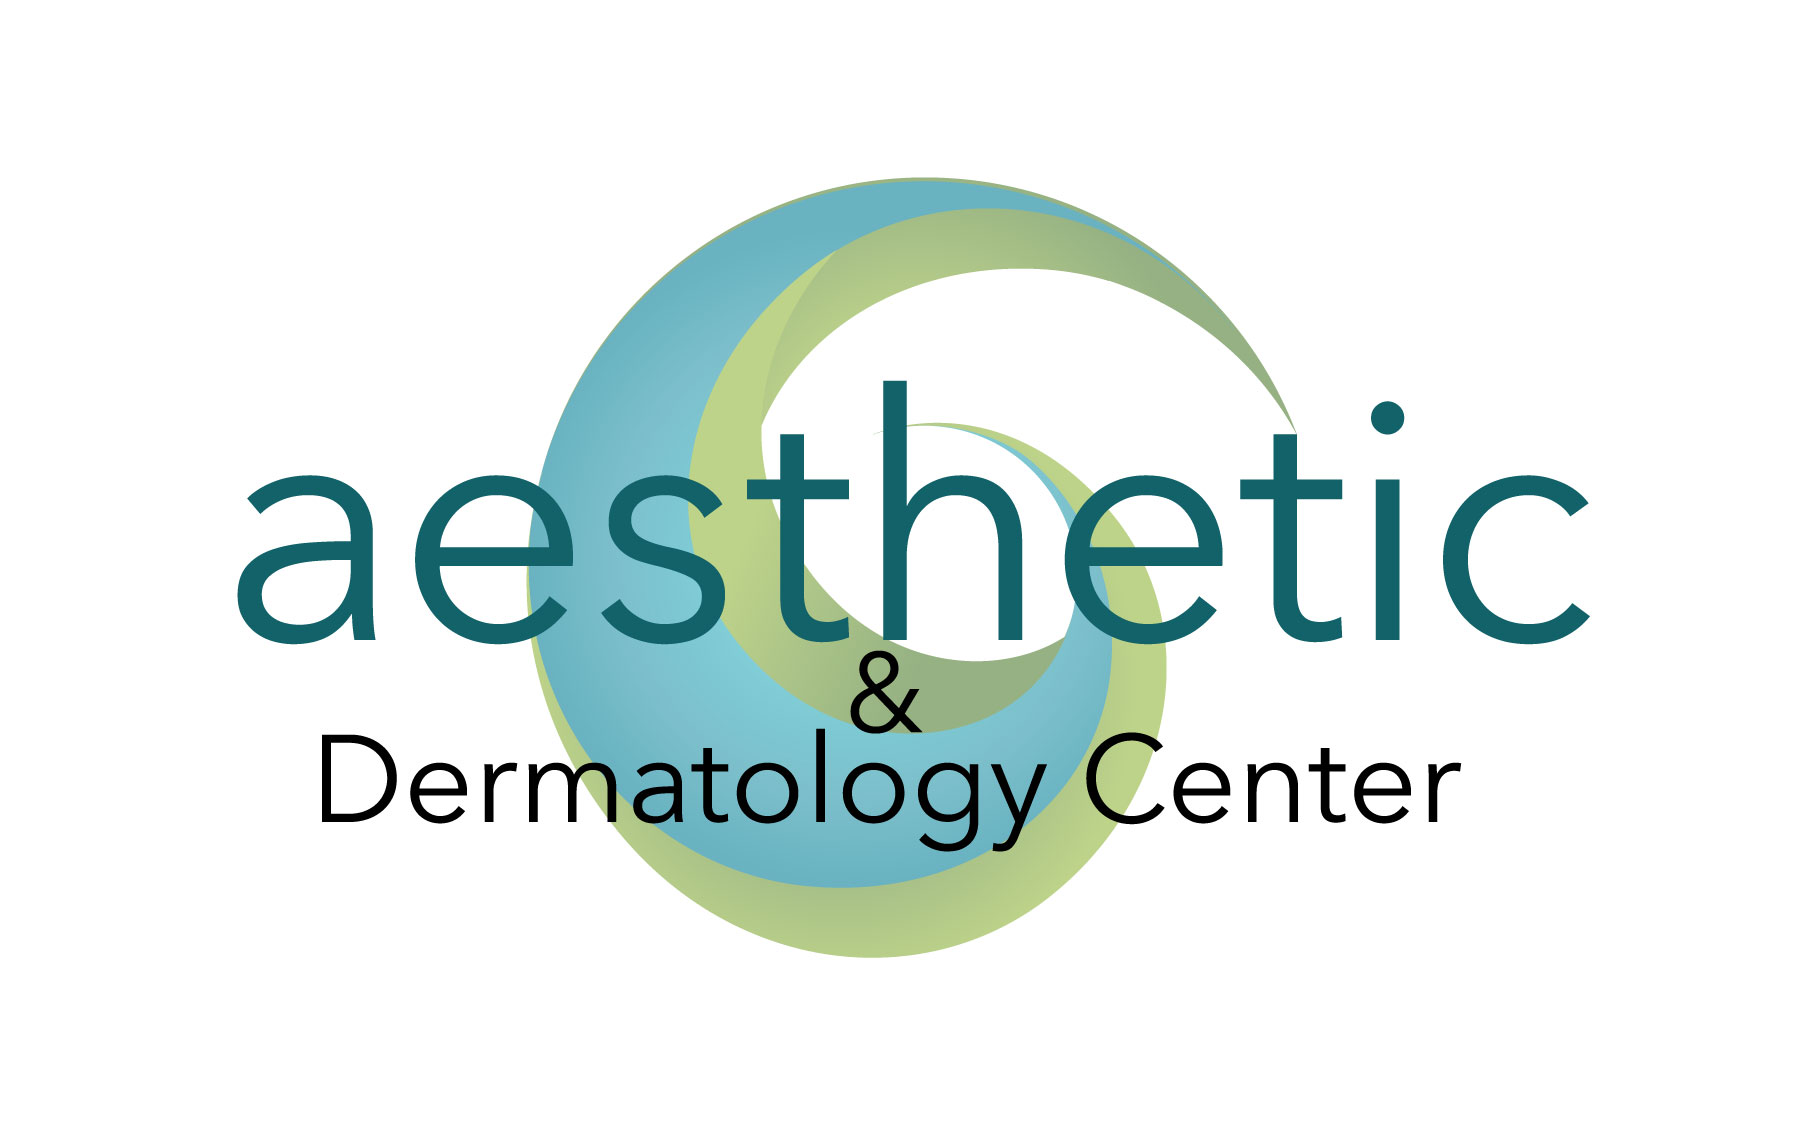 Aesthetic & Dermatology Center